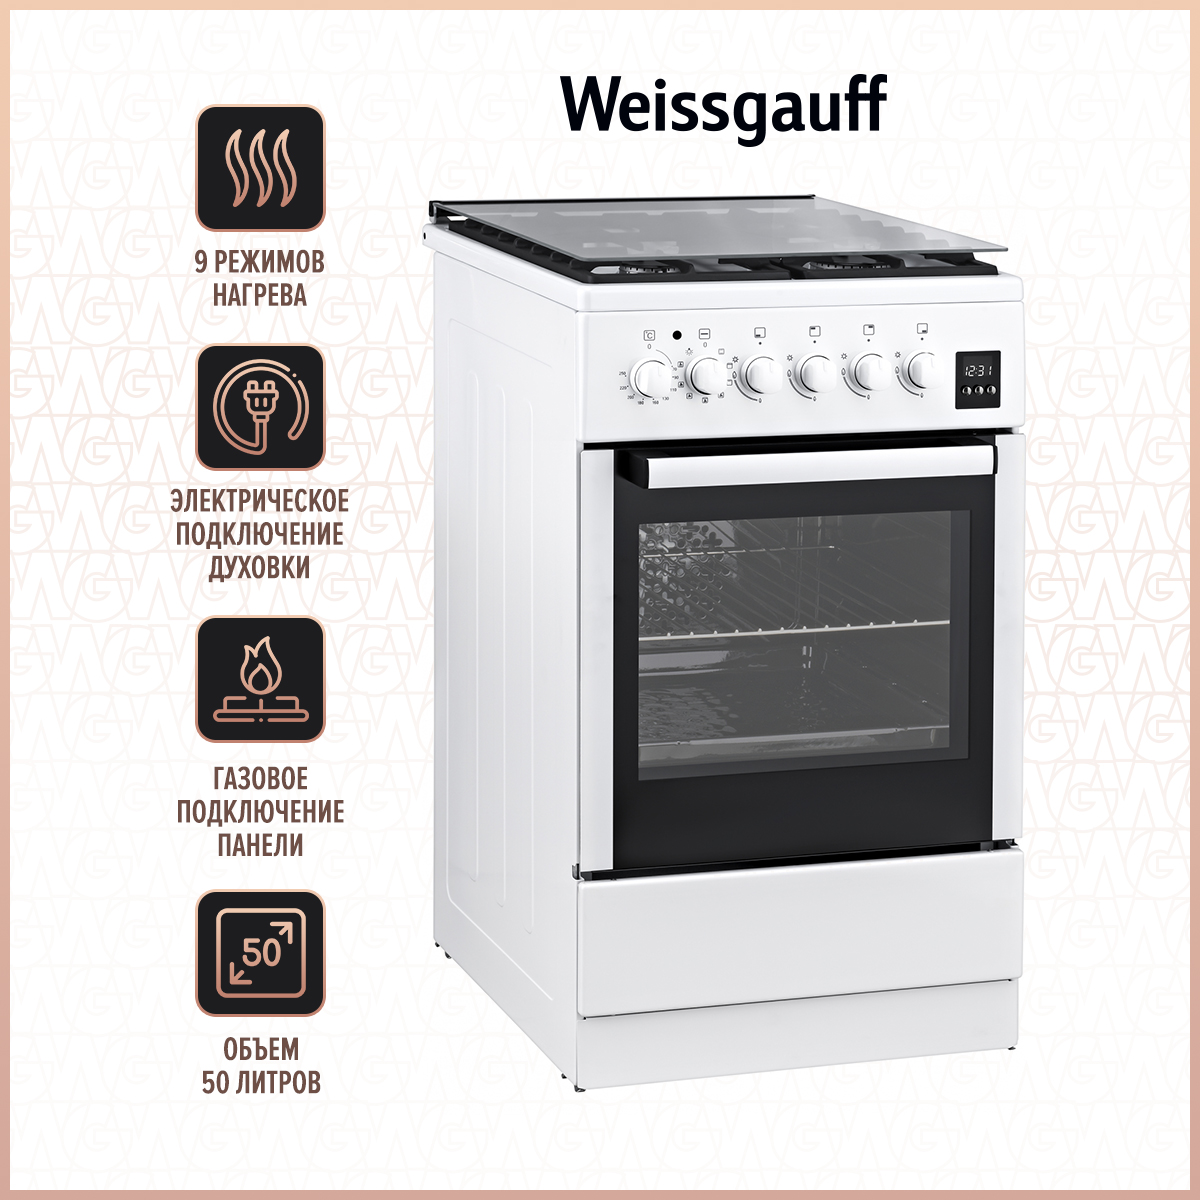 Комбинированная плита Weissgauff WCS K2K59 WGE White комбинированная плита weissgauff wcs k2k59 wge